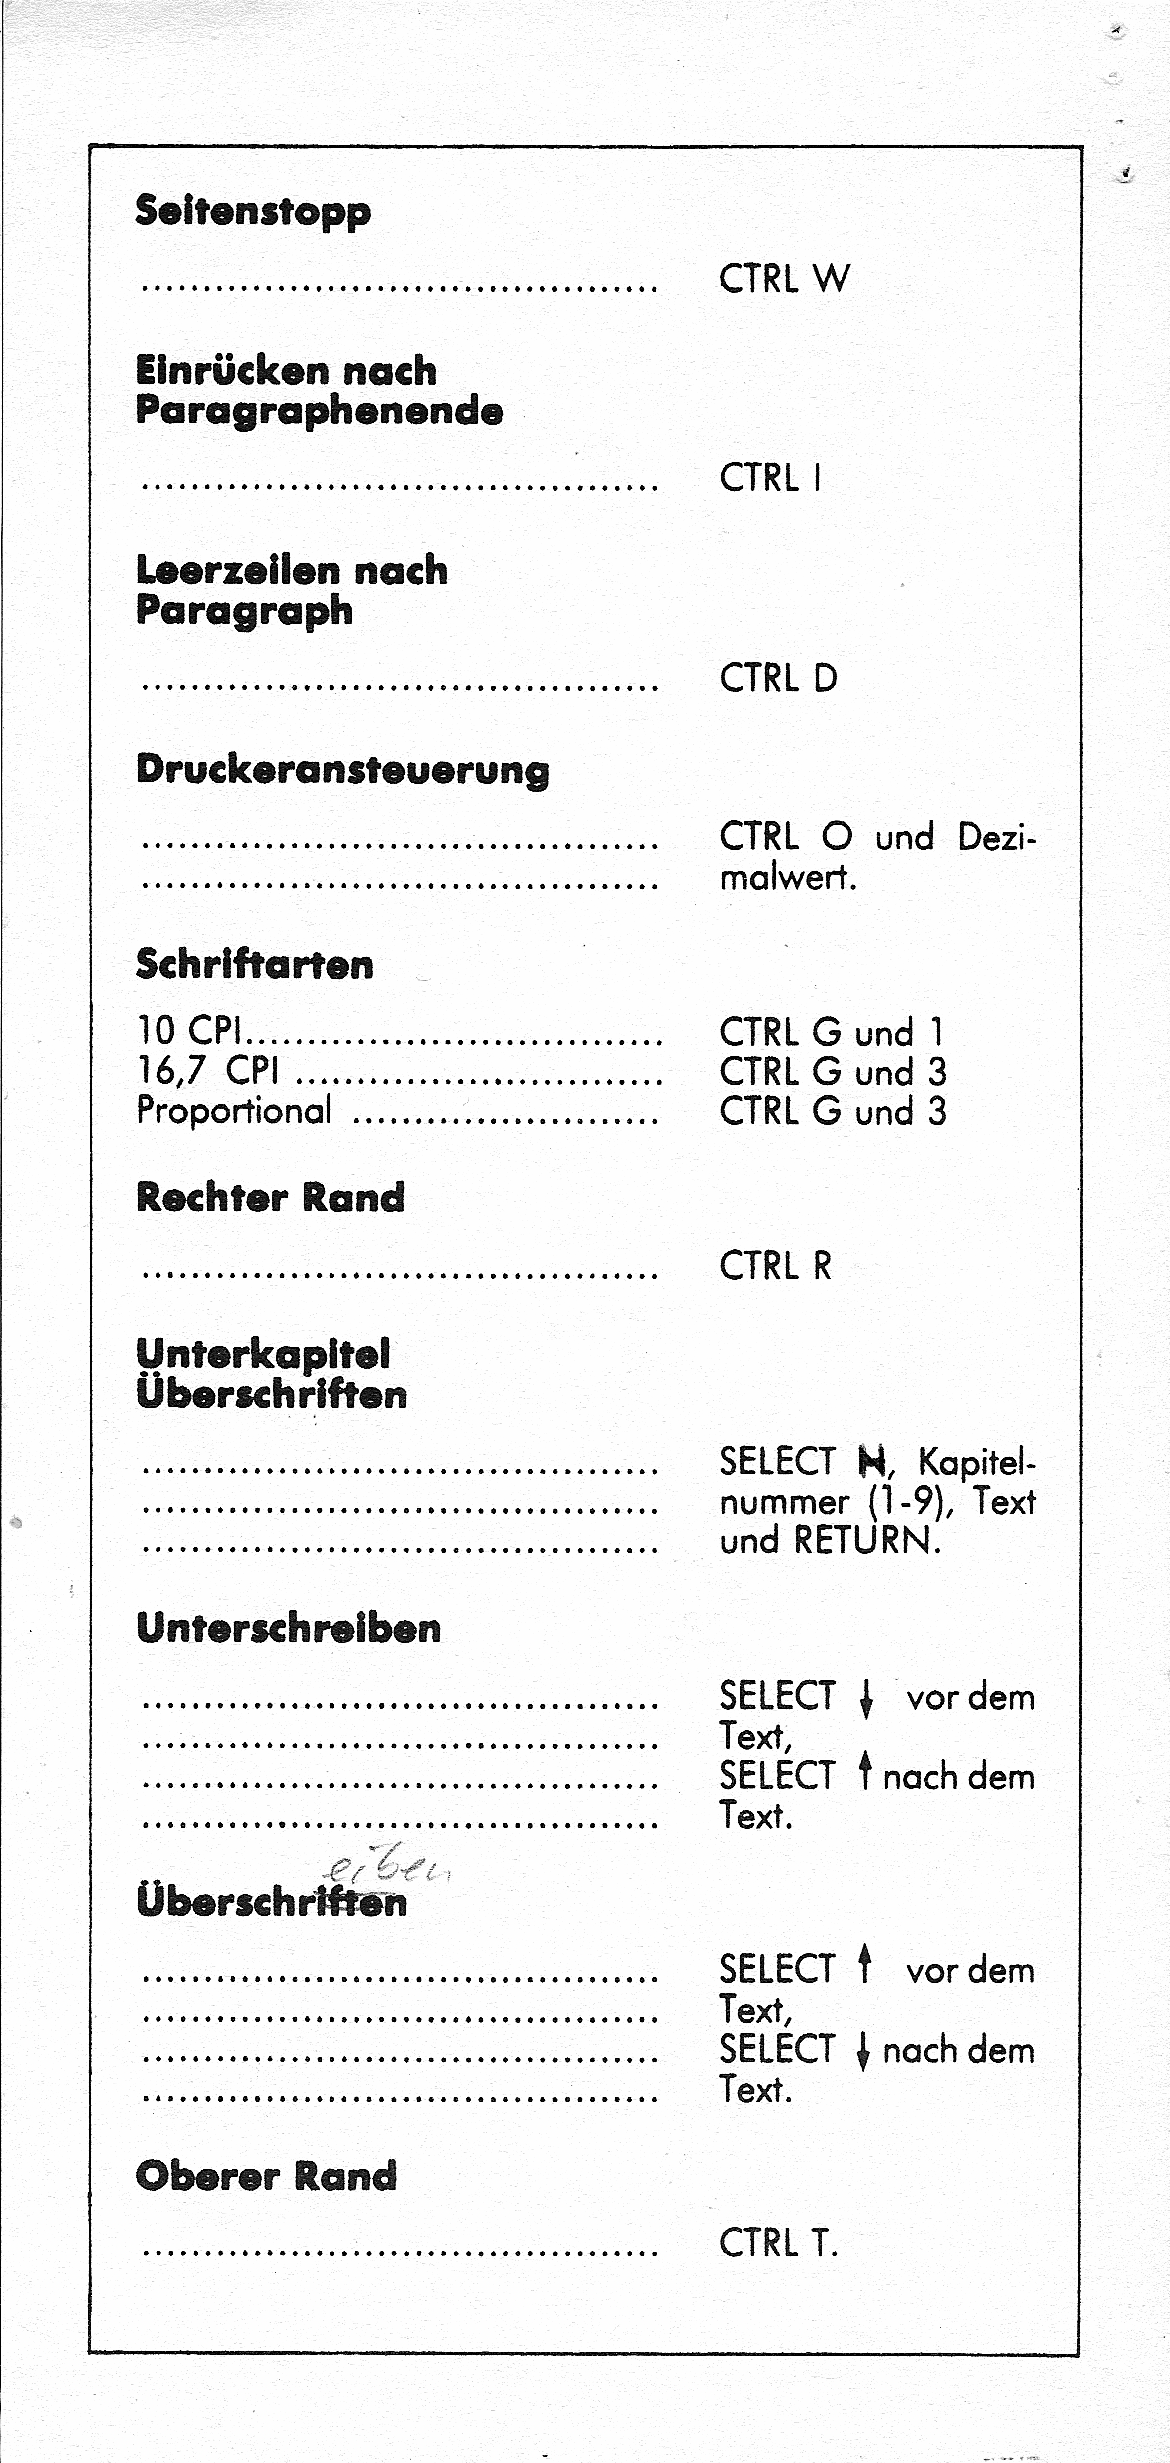 Atari Schreiber/Referenz-Karten_006.png